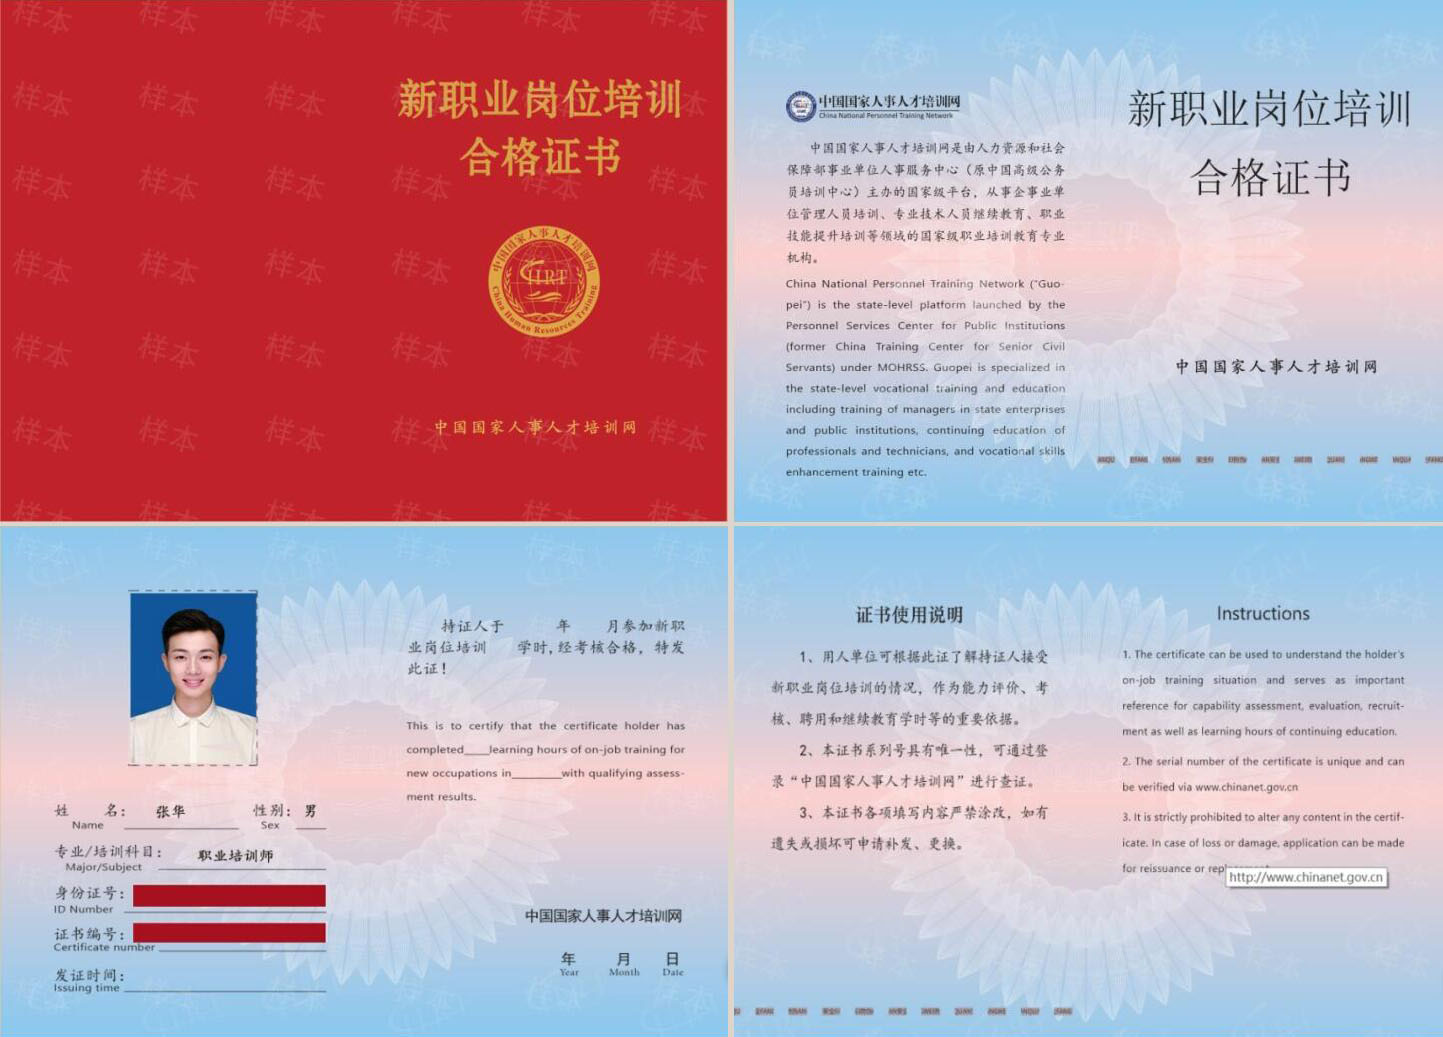 中国国家人事人才培训网 职业培训师 新职业岗位培训合格证书